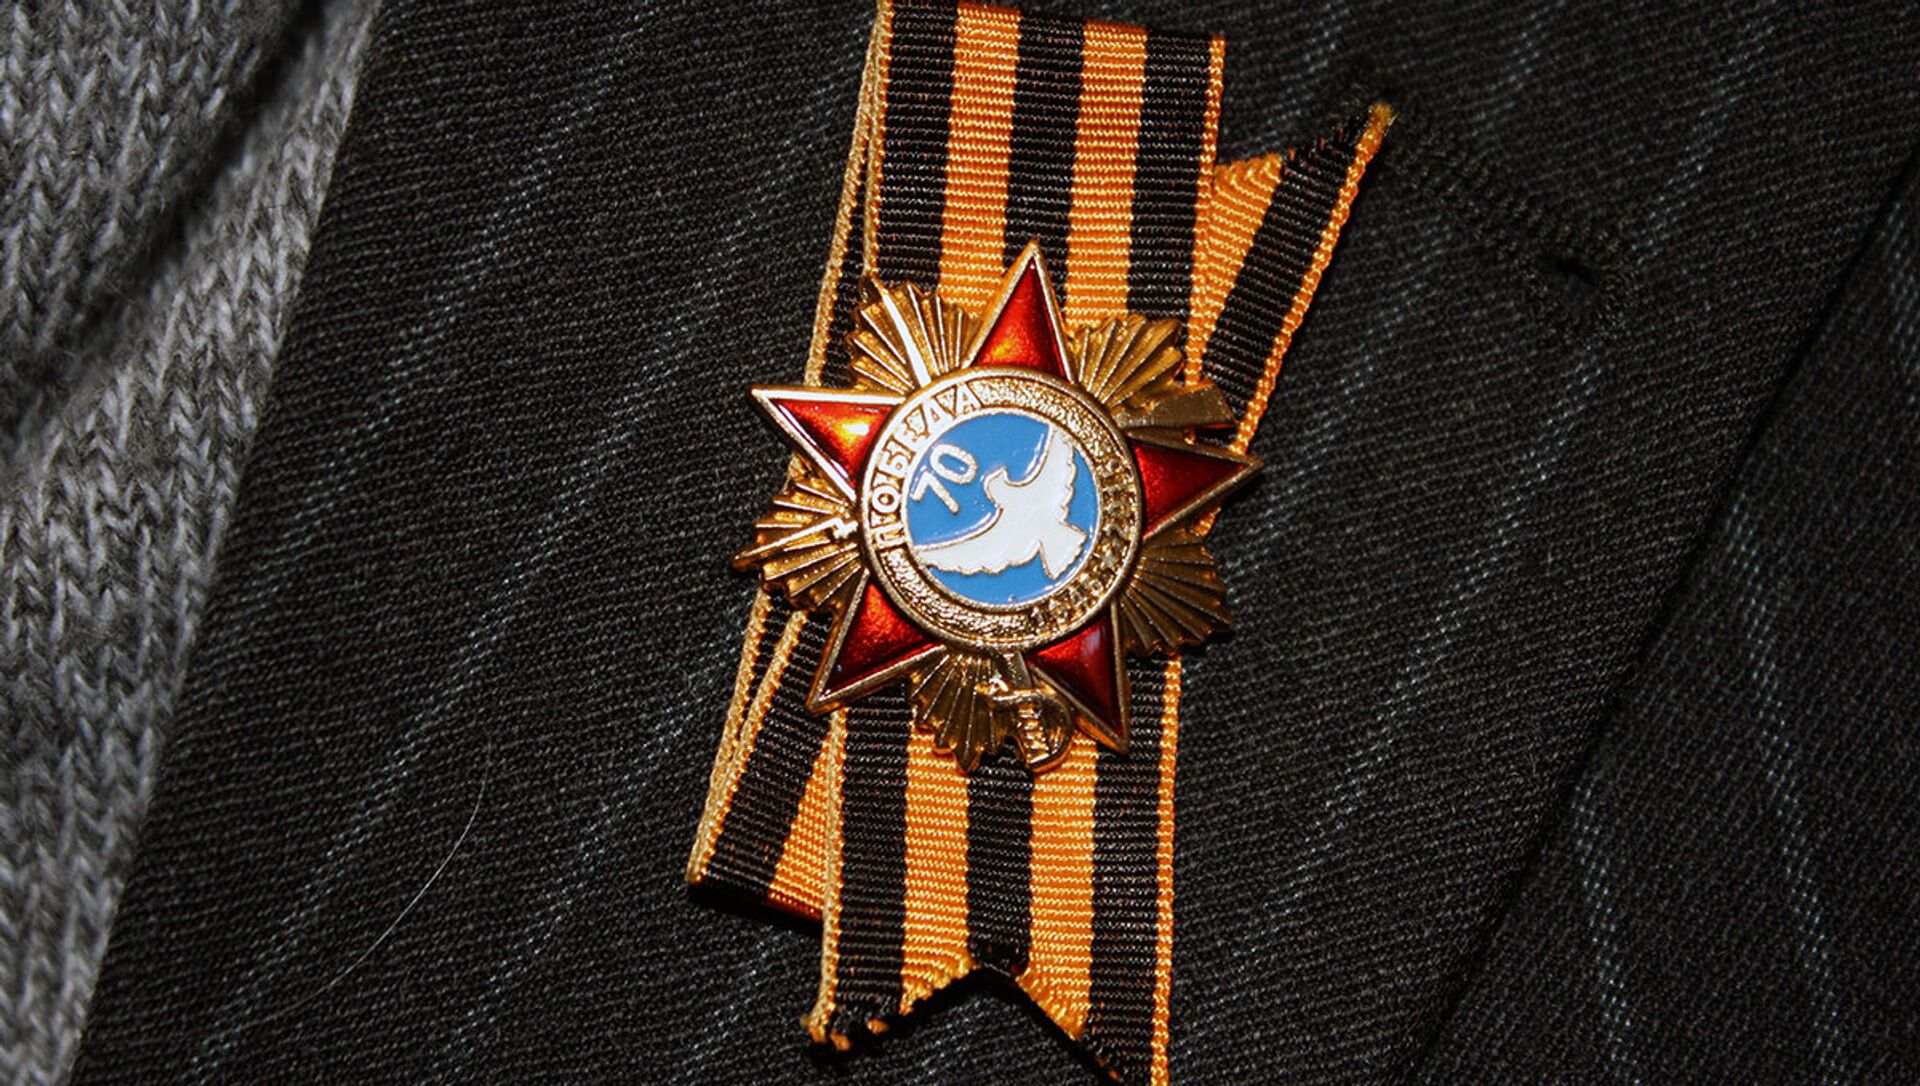 Atminimo ordinas ant Didžiojo Tėvynės karo veterano švarko atlapo - Sputnik Lietuva, 1920, 08.05.2021